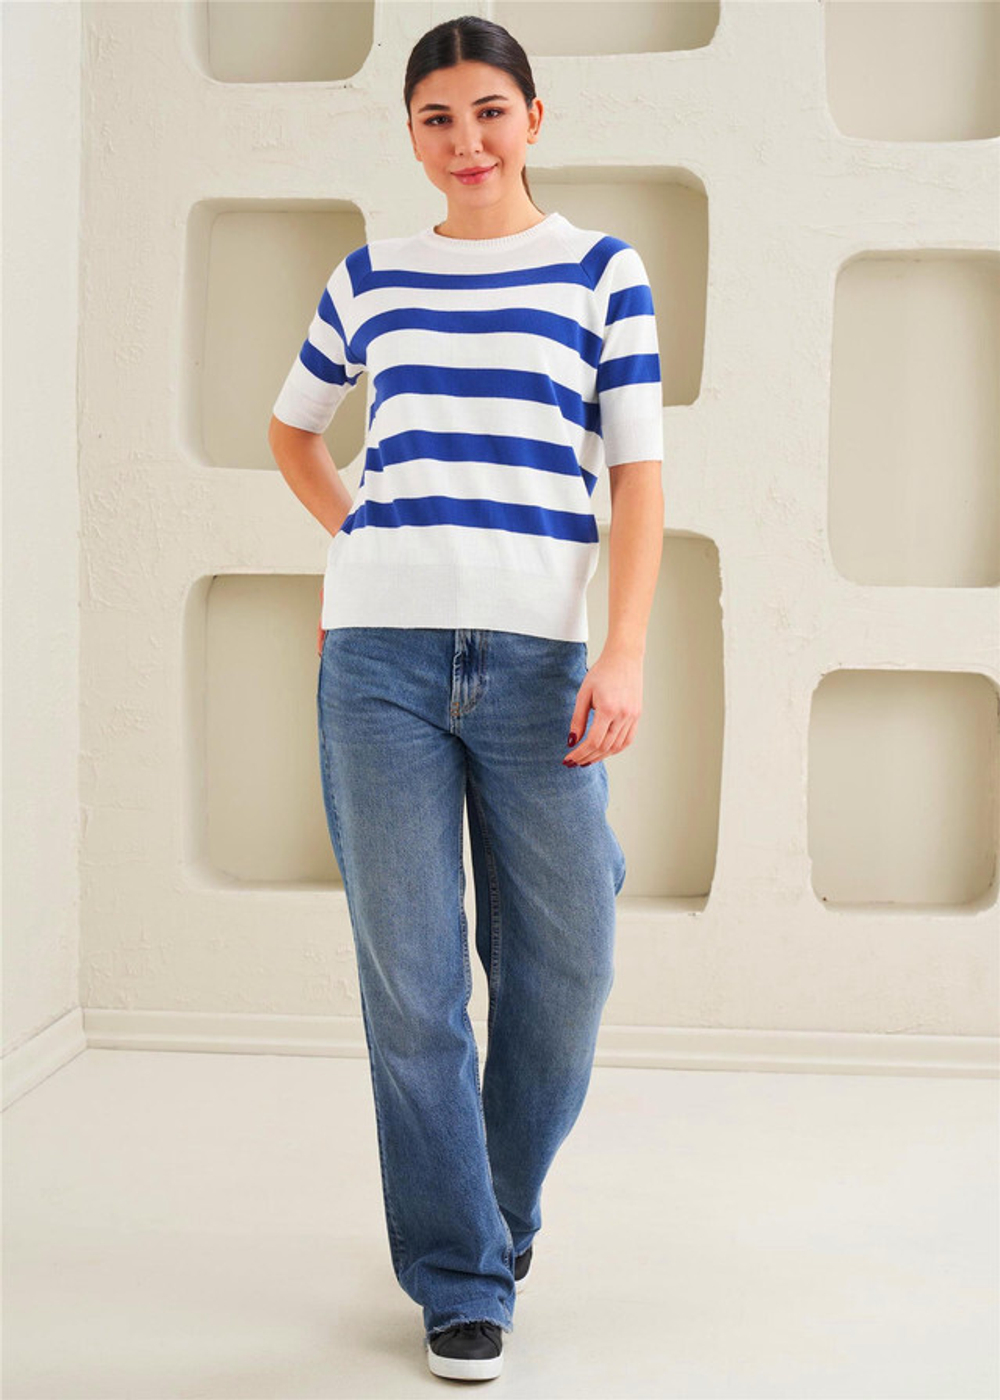 Женская футболка - Базовая, короткий рукав - 50% хлопок, 50% полиамид, Трикотаж - Голубая полоса - 41518